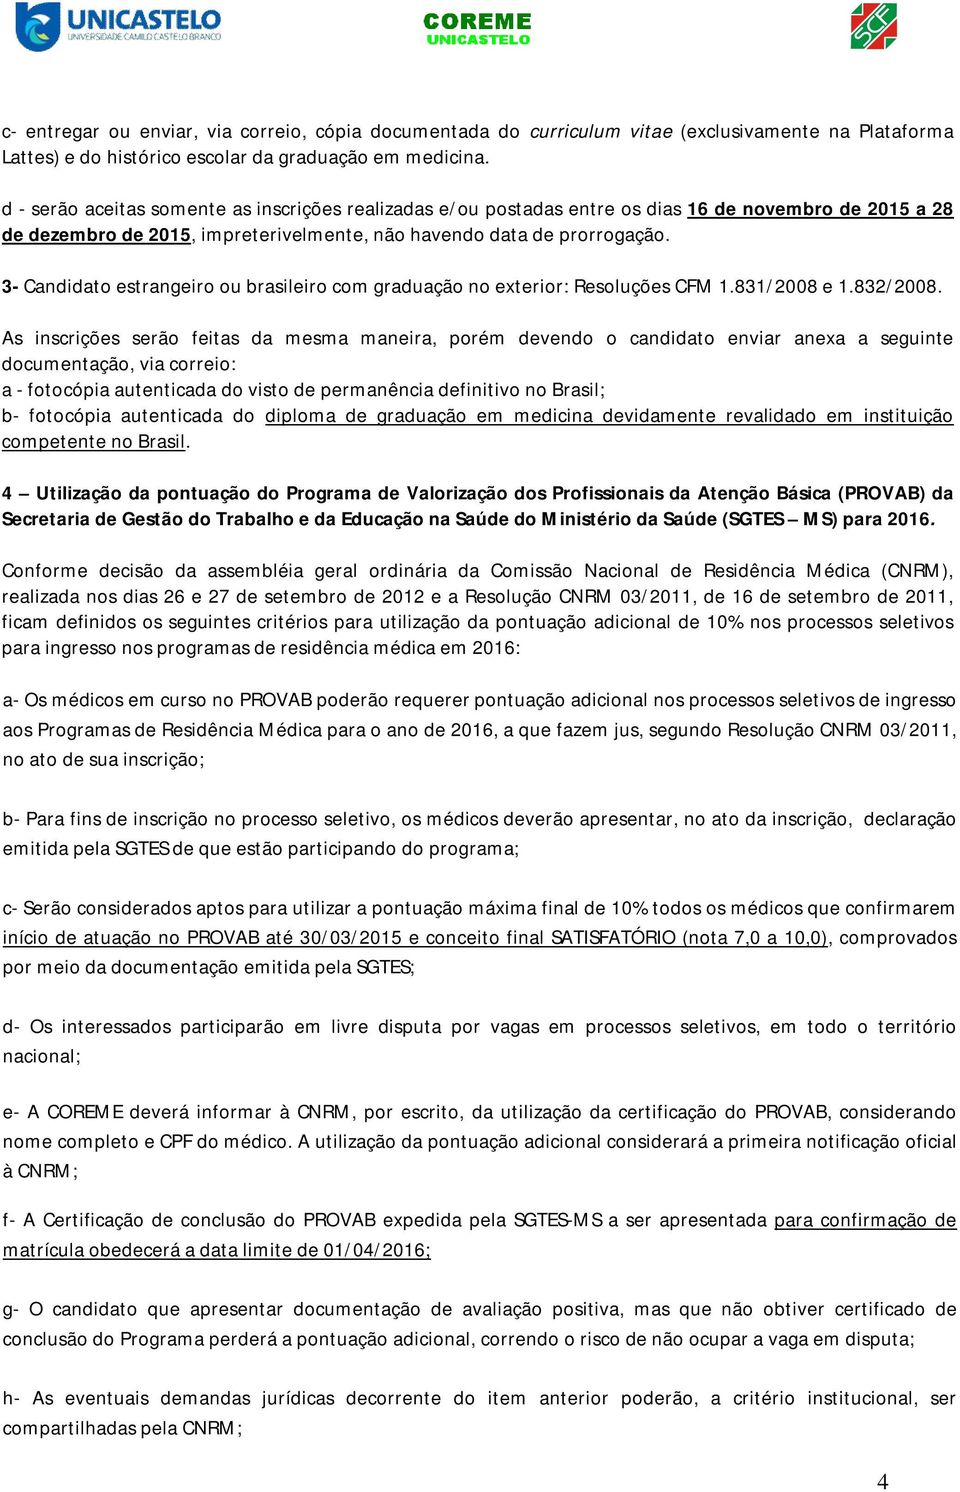 3- Candidato estrangeiro ou brasileiro com graduação no exterior: Resoluções CFM 1.831/2008 e 1.832/2008.